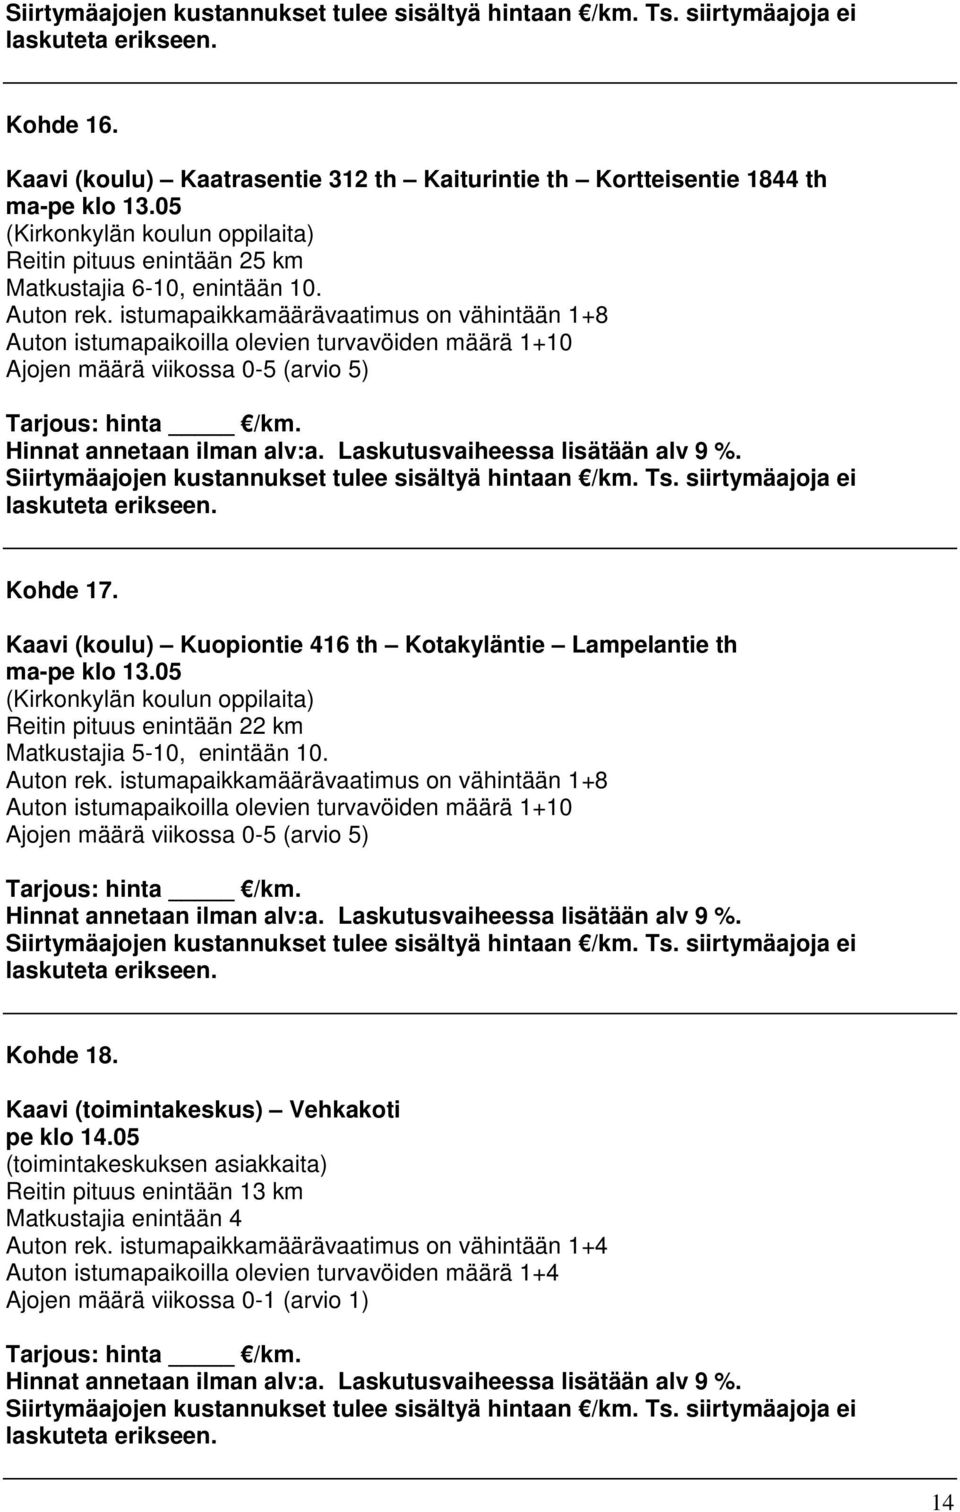 Kaavi (koulu) Kuopiontie 416 th Kotakyläntie Lampelantie th ma-pe klo 13.05 (Kirkonkylän koulun oppilaita) Reitin pituus enintään 22 km Matkustajia 5-10, enintään 10. Auton rek.